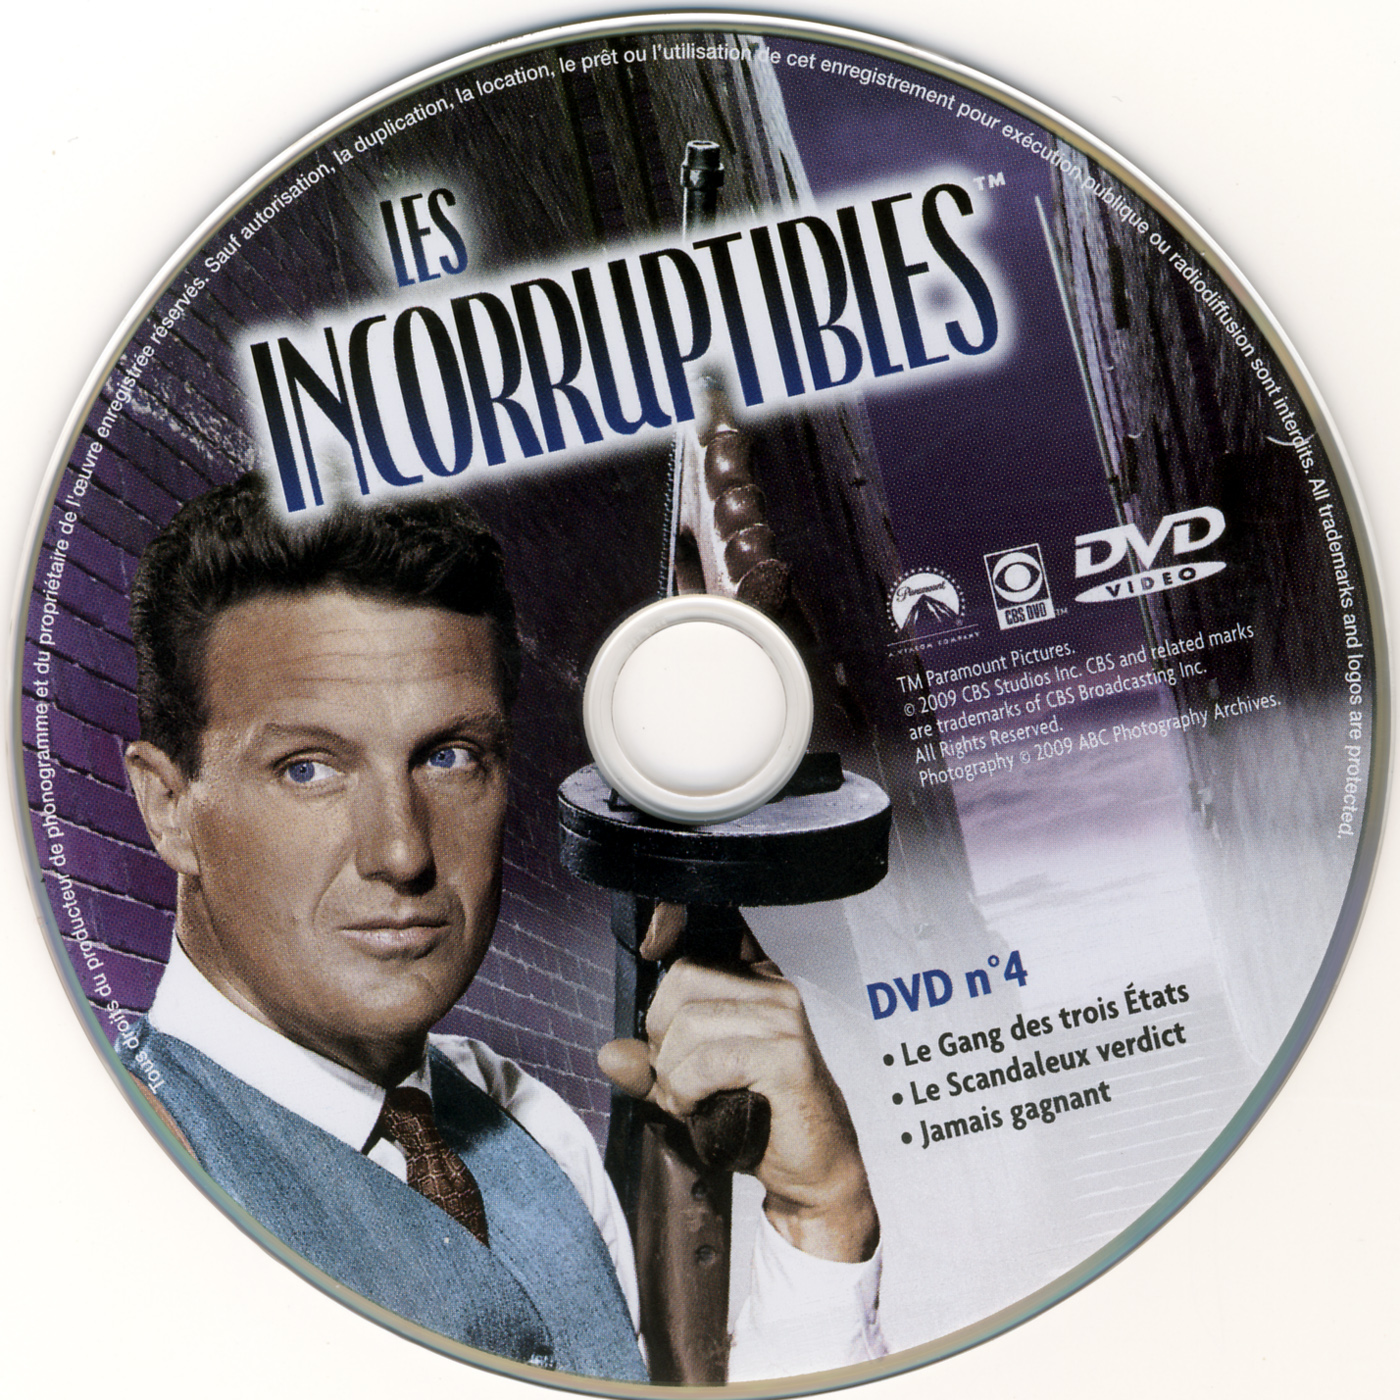 Les incorruptibles intgrale DVD 04